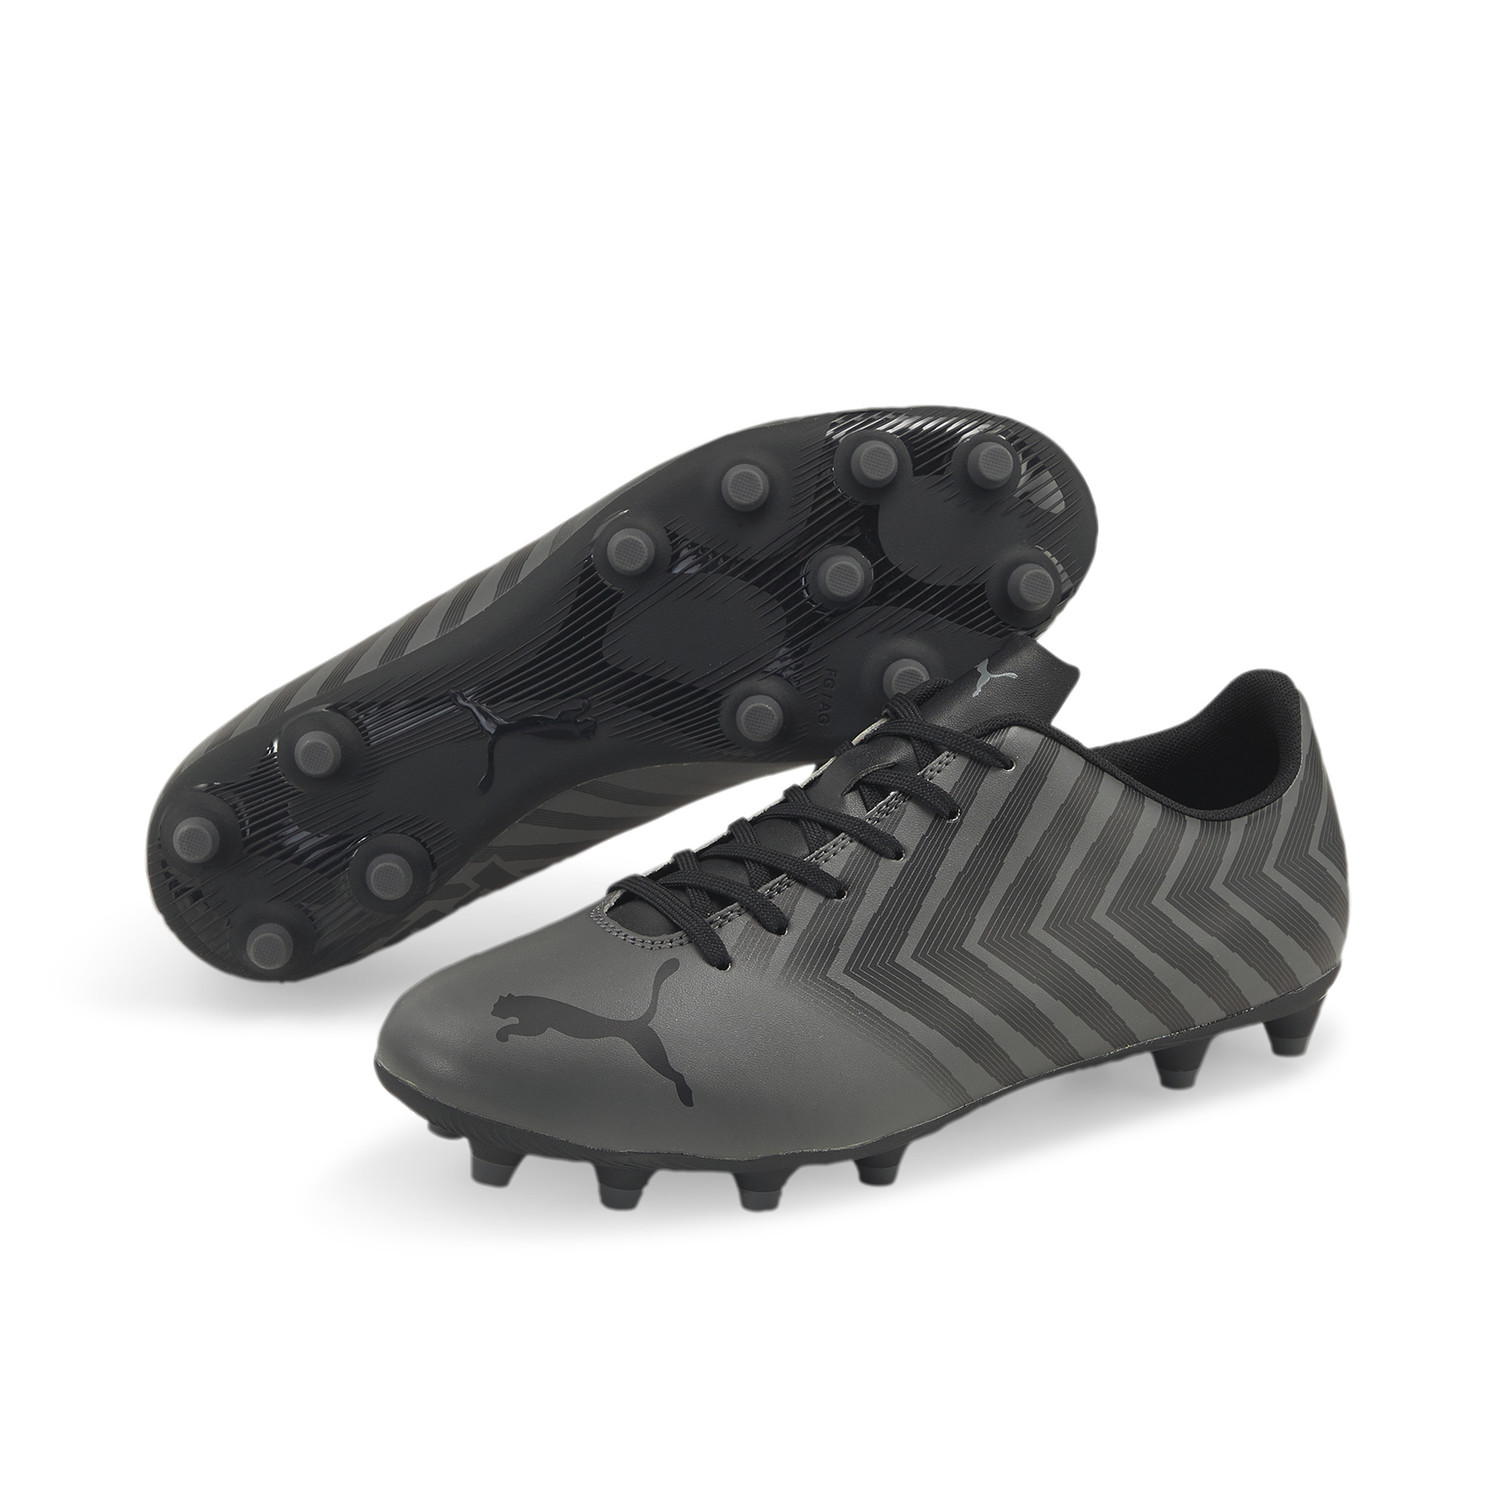 Zapatos Fútbol Hombre Puma Tacto II FG AG Gris/Negro